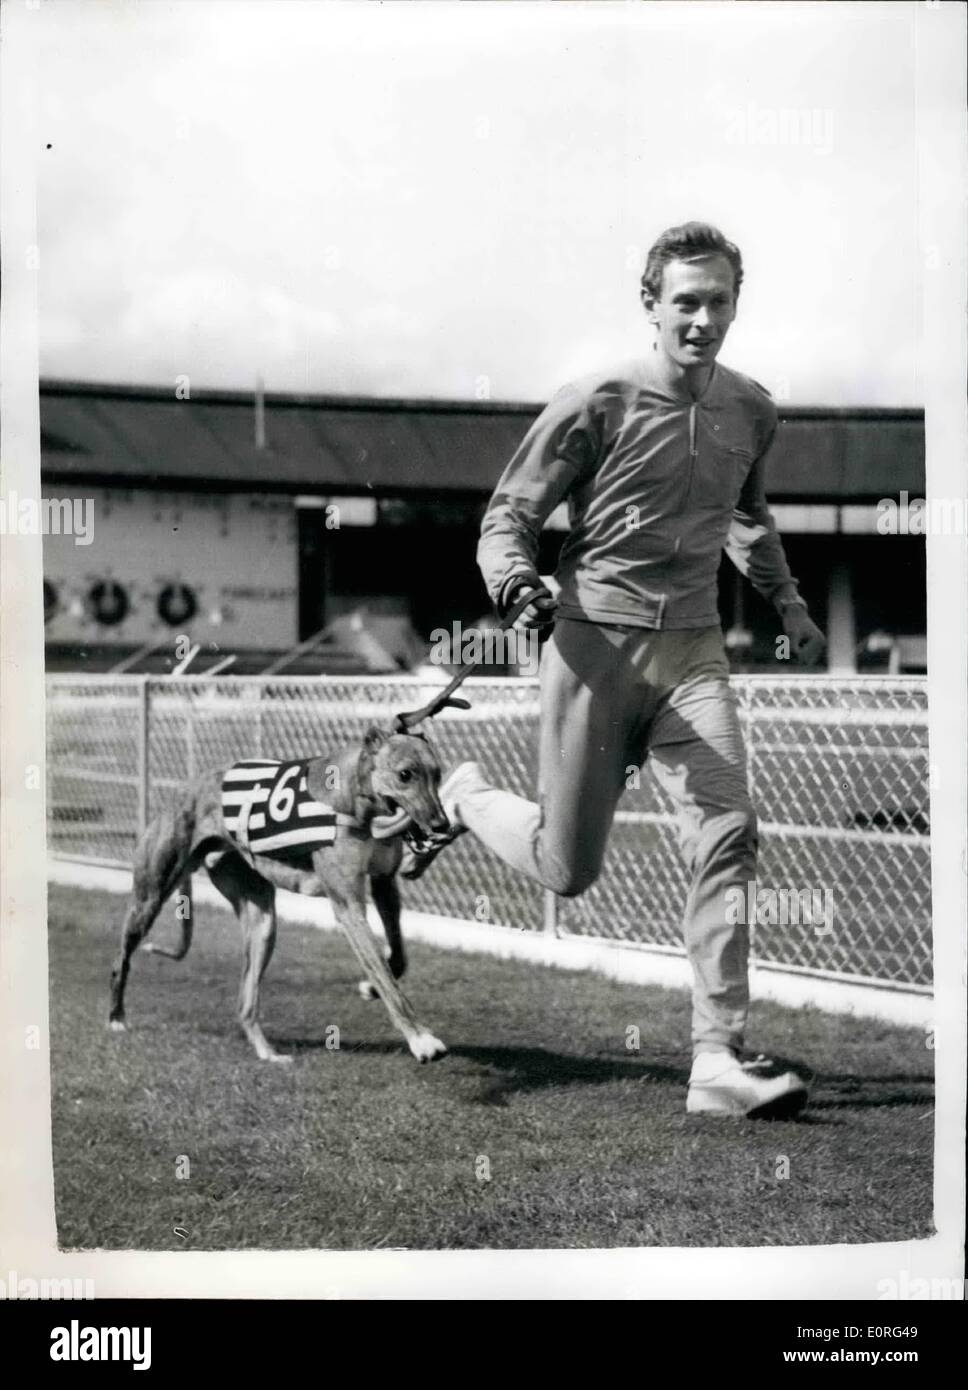 8. August 1959 - haben Brian Hewson Uhren sein Greyhound den ersten Versuch; Brian Hewson, einer der britischen Top-Athleten, ging in die weiße Stadt, wo er gegen Polen an diesem Wochenende läuft zu beobachten, seine vor kurzem gekauft Greyhound '' Clonavly Romantik '' haben es ist die erste Studie, die es in 30,31 Sekunden gewann. Foto zeigt BrianHewson mit seinem Greyhound '' Clonavly Romantik '' gesehen heute rund um die Strecke in White City im Trab. Stockfoto